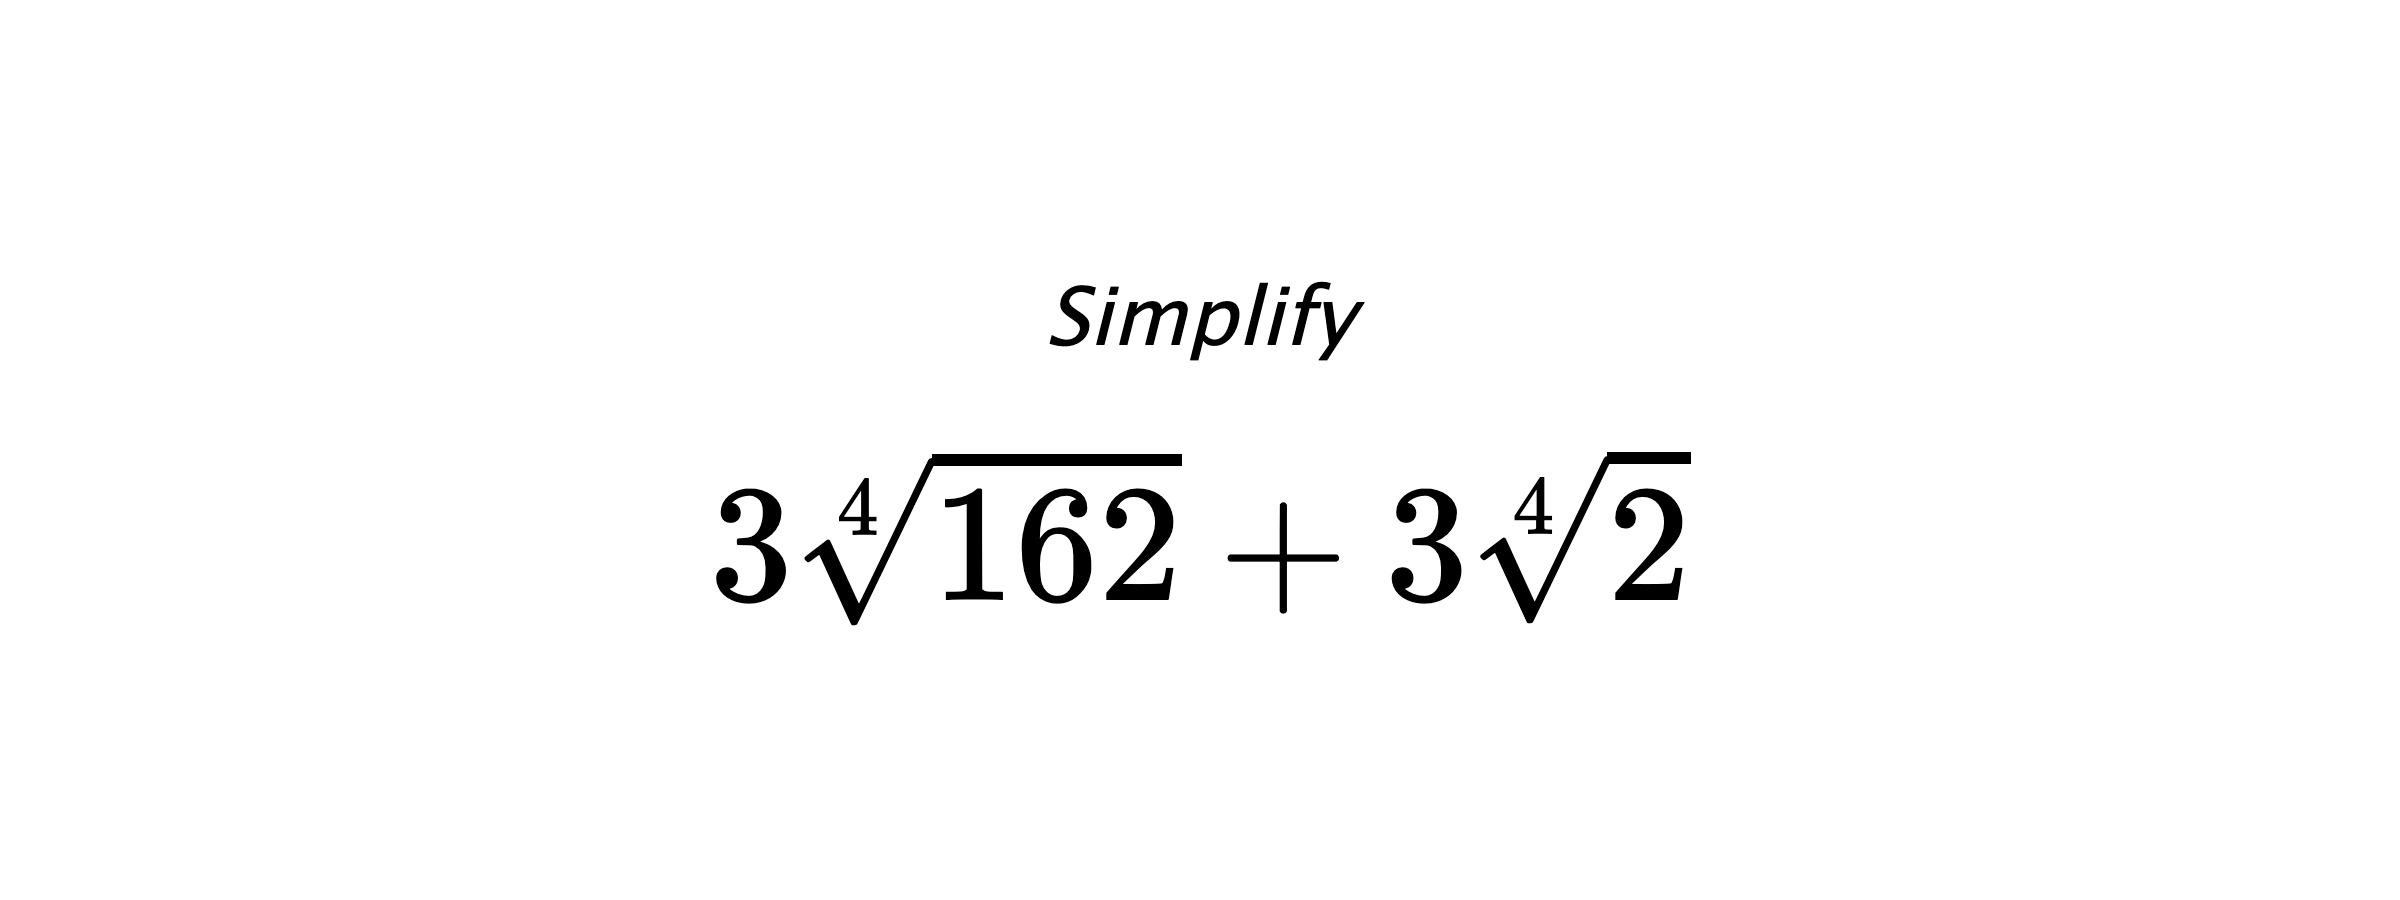 Simplify $ 3\sqrt[4]{162}+3\sqrt[4]{2} $